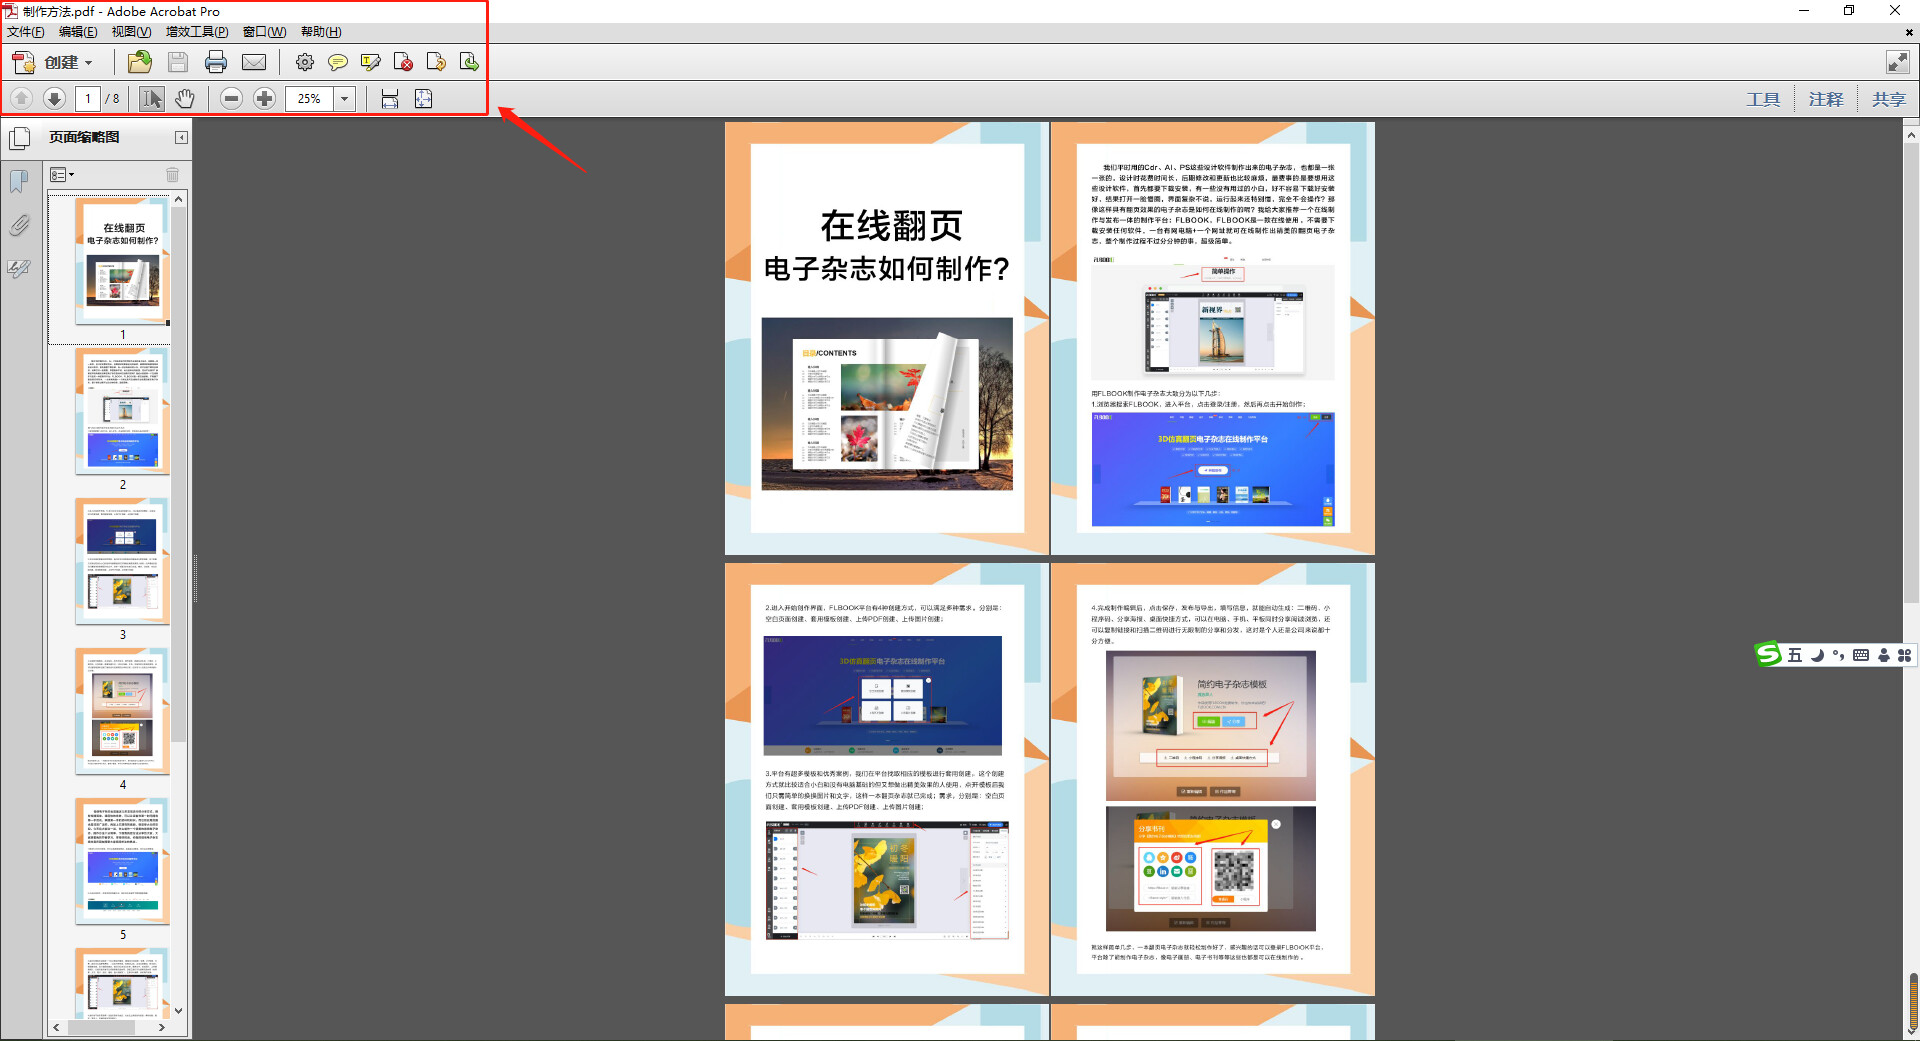 教你如何把产品图制作精美的翻页电子书-FLBOOK博客